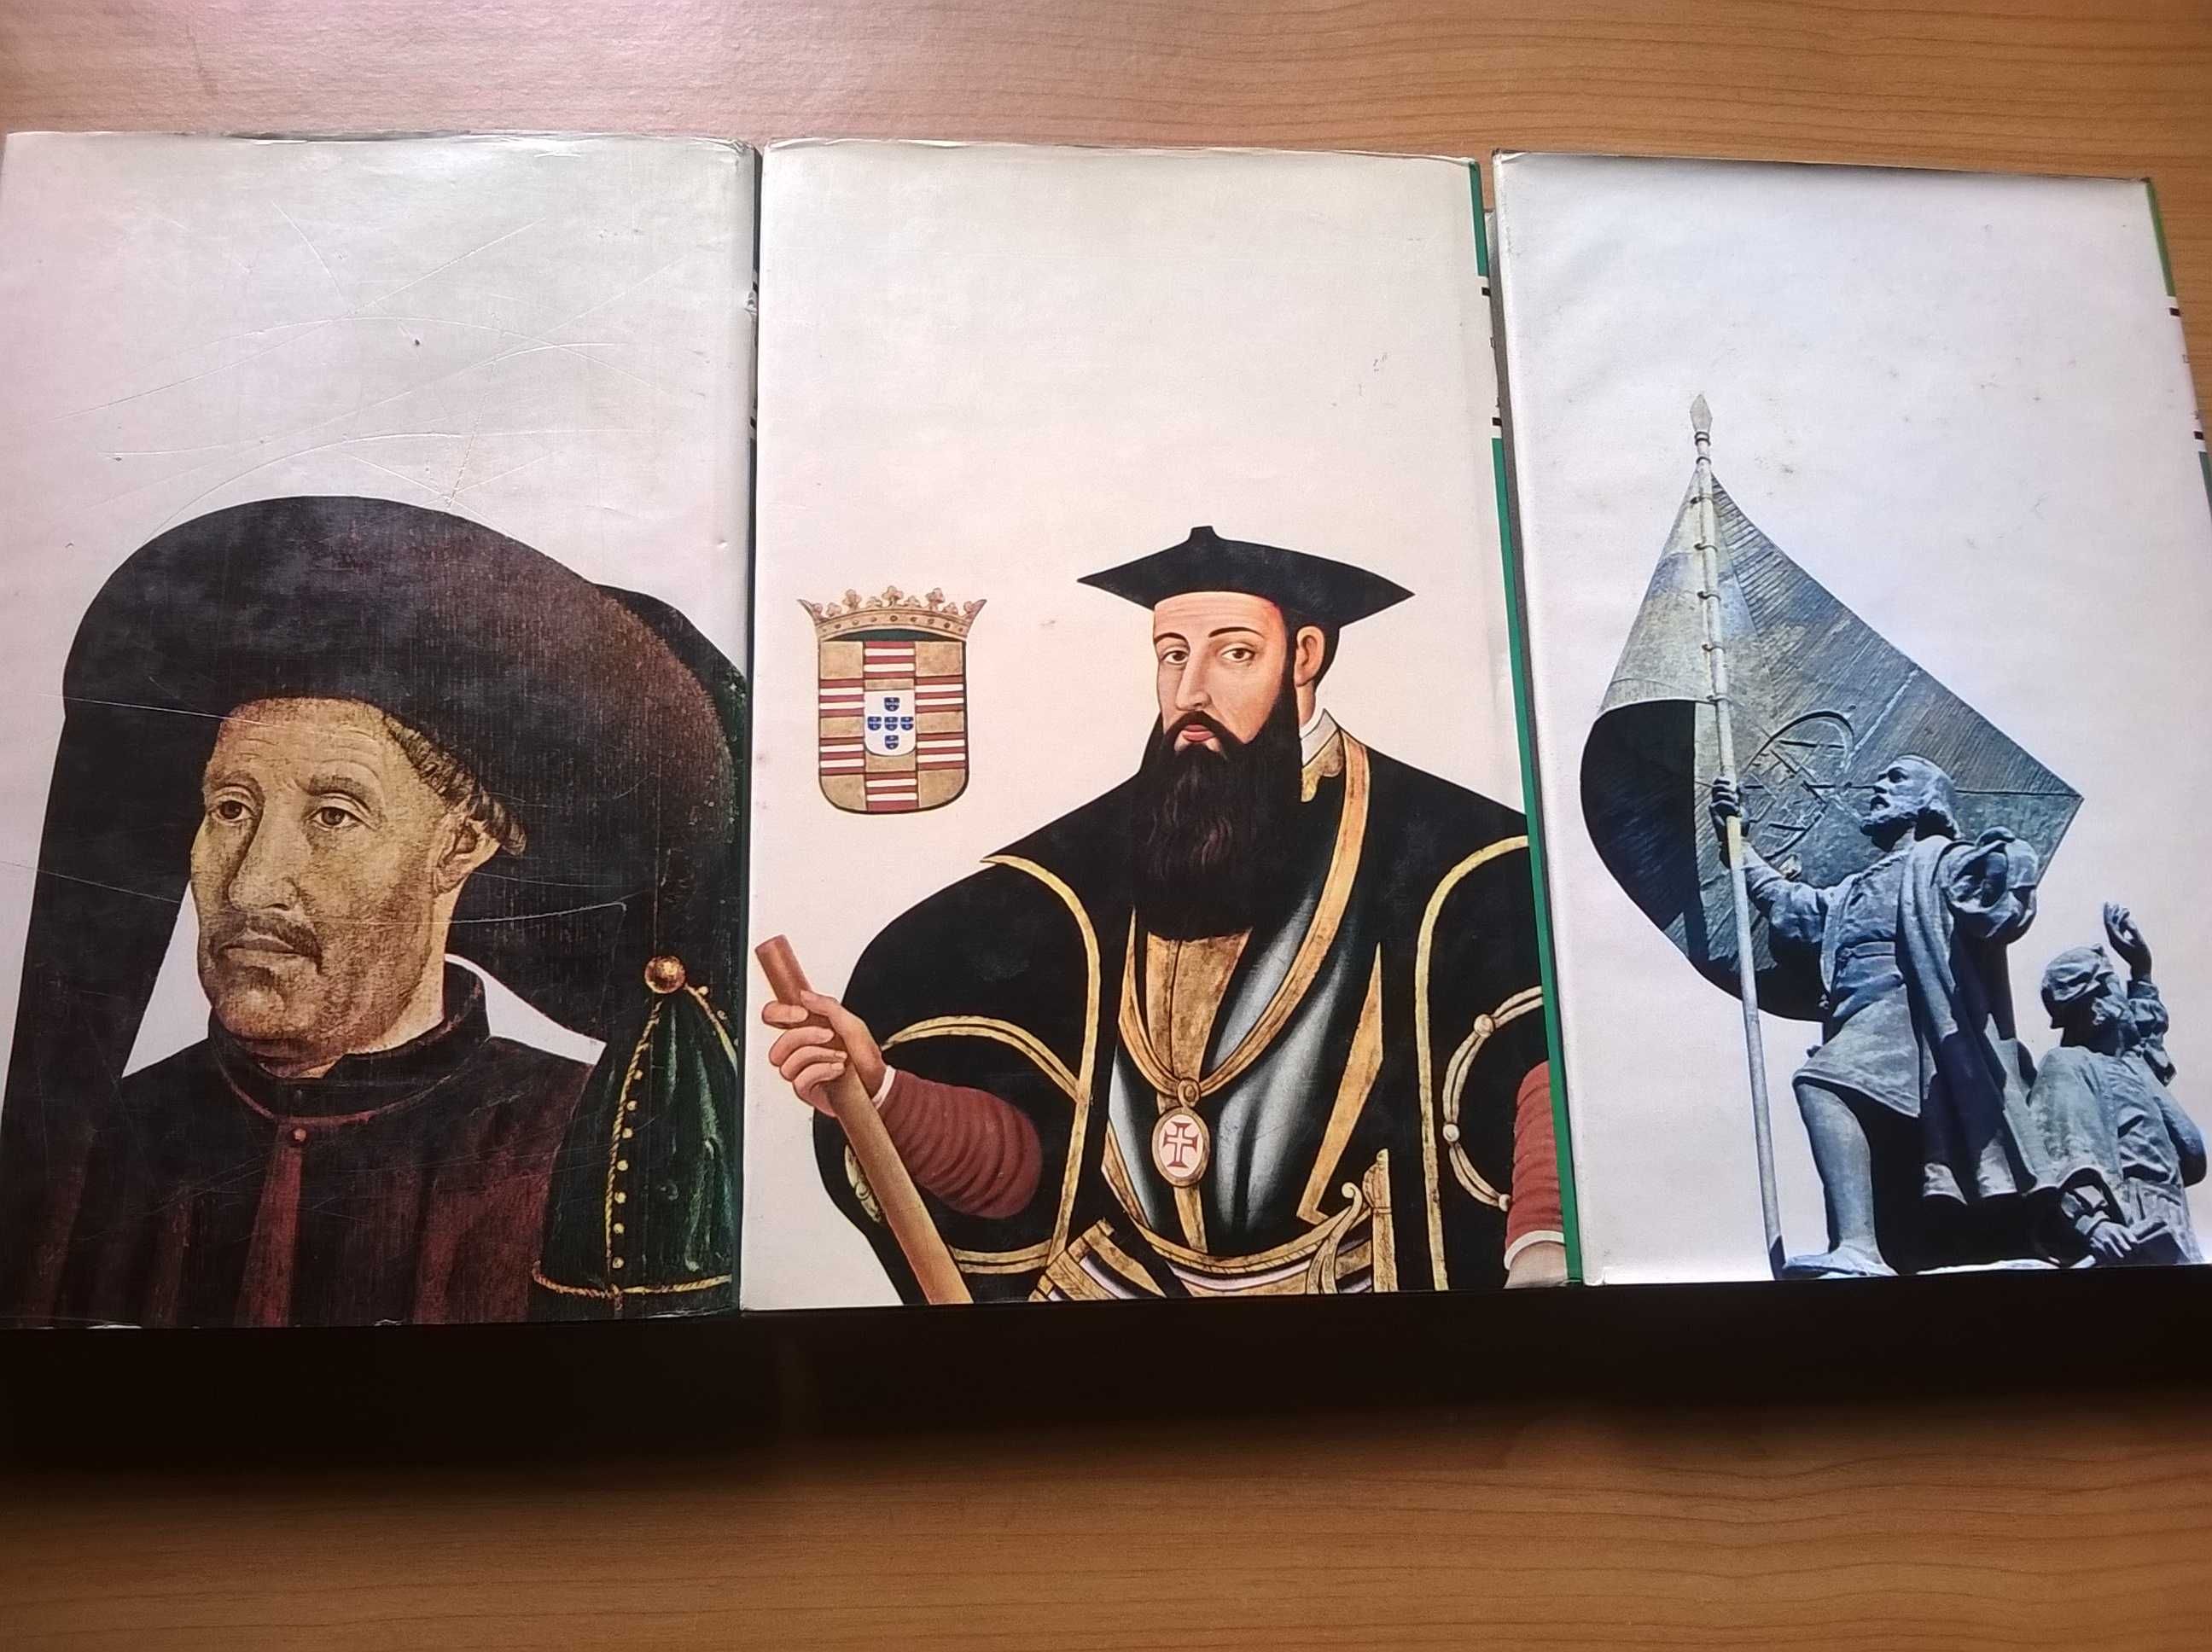 História dos Descobrimentos Portugueses (3 vols) - Jaime Cortesão